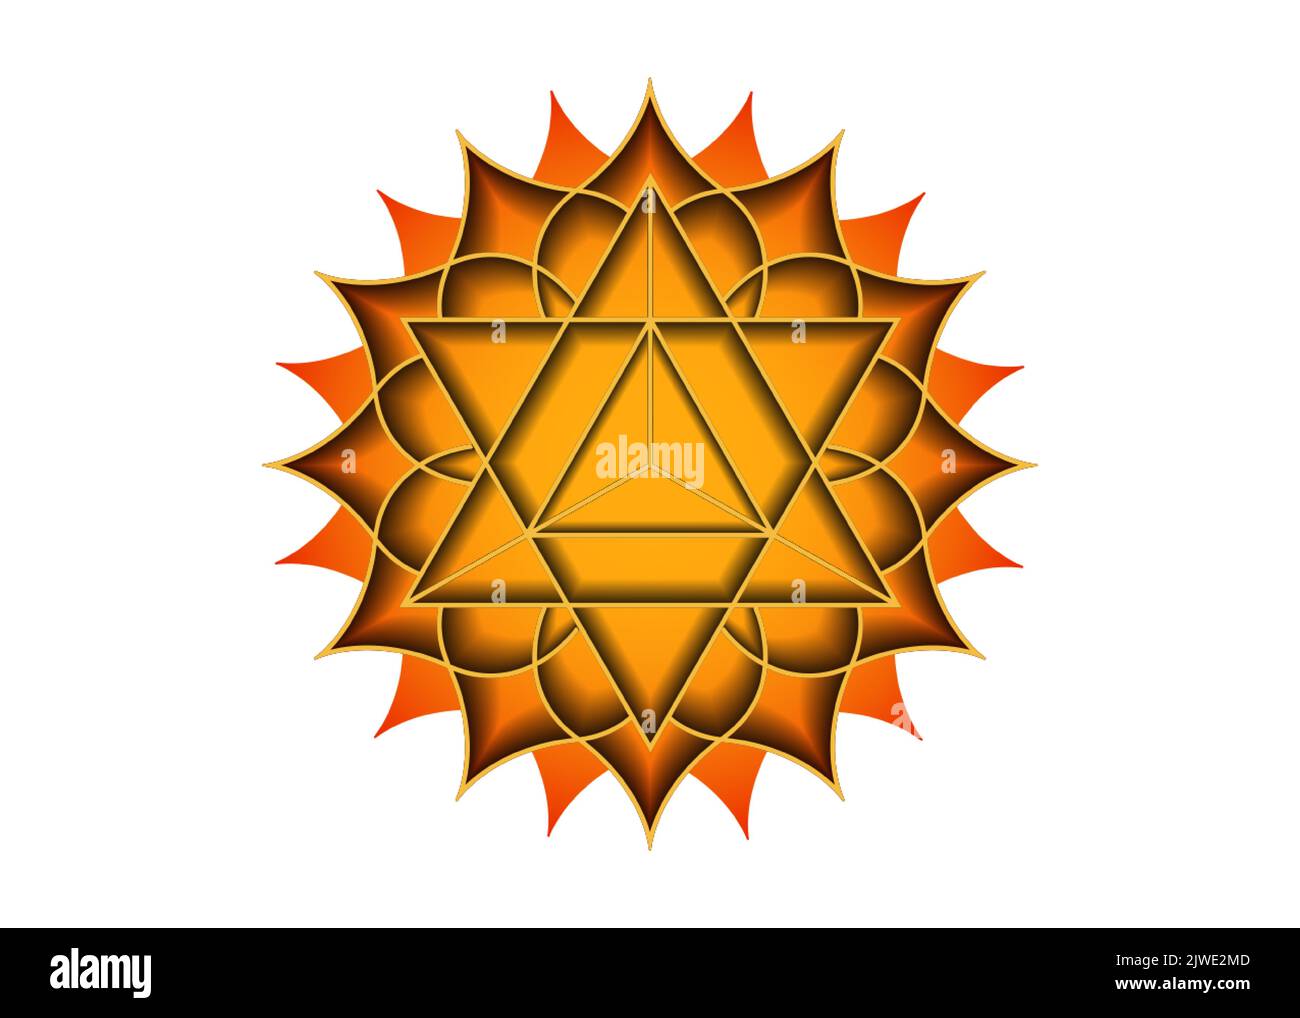 Geometria sacra, simbolo mistico della Merkabah, secondo chakra chakra, fiore di loto sacrale di colore arancione, logo magico disegno di mandala geometrico, segno Illustrazione Vettoriale